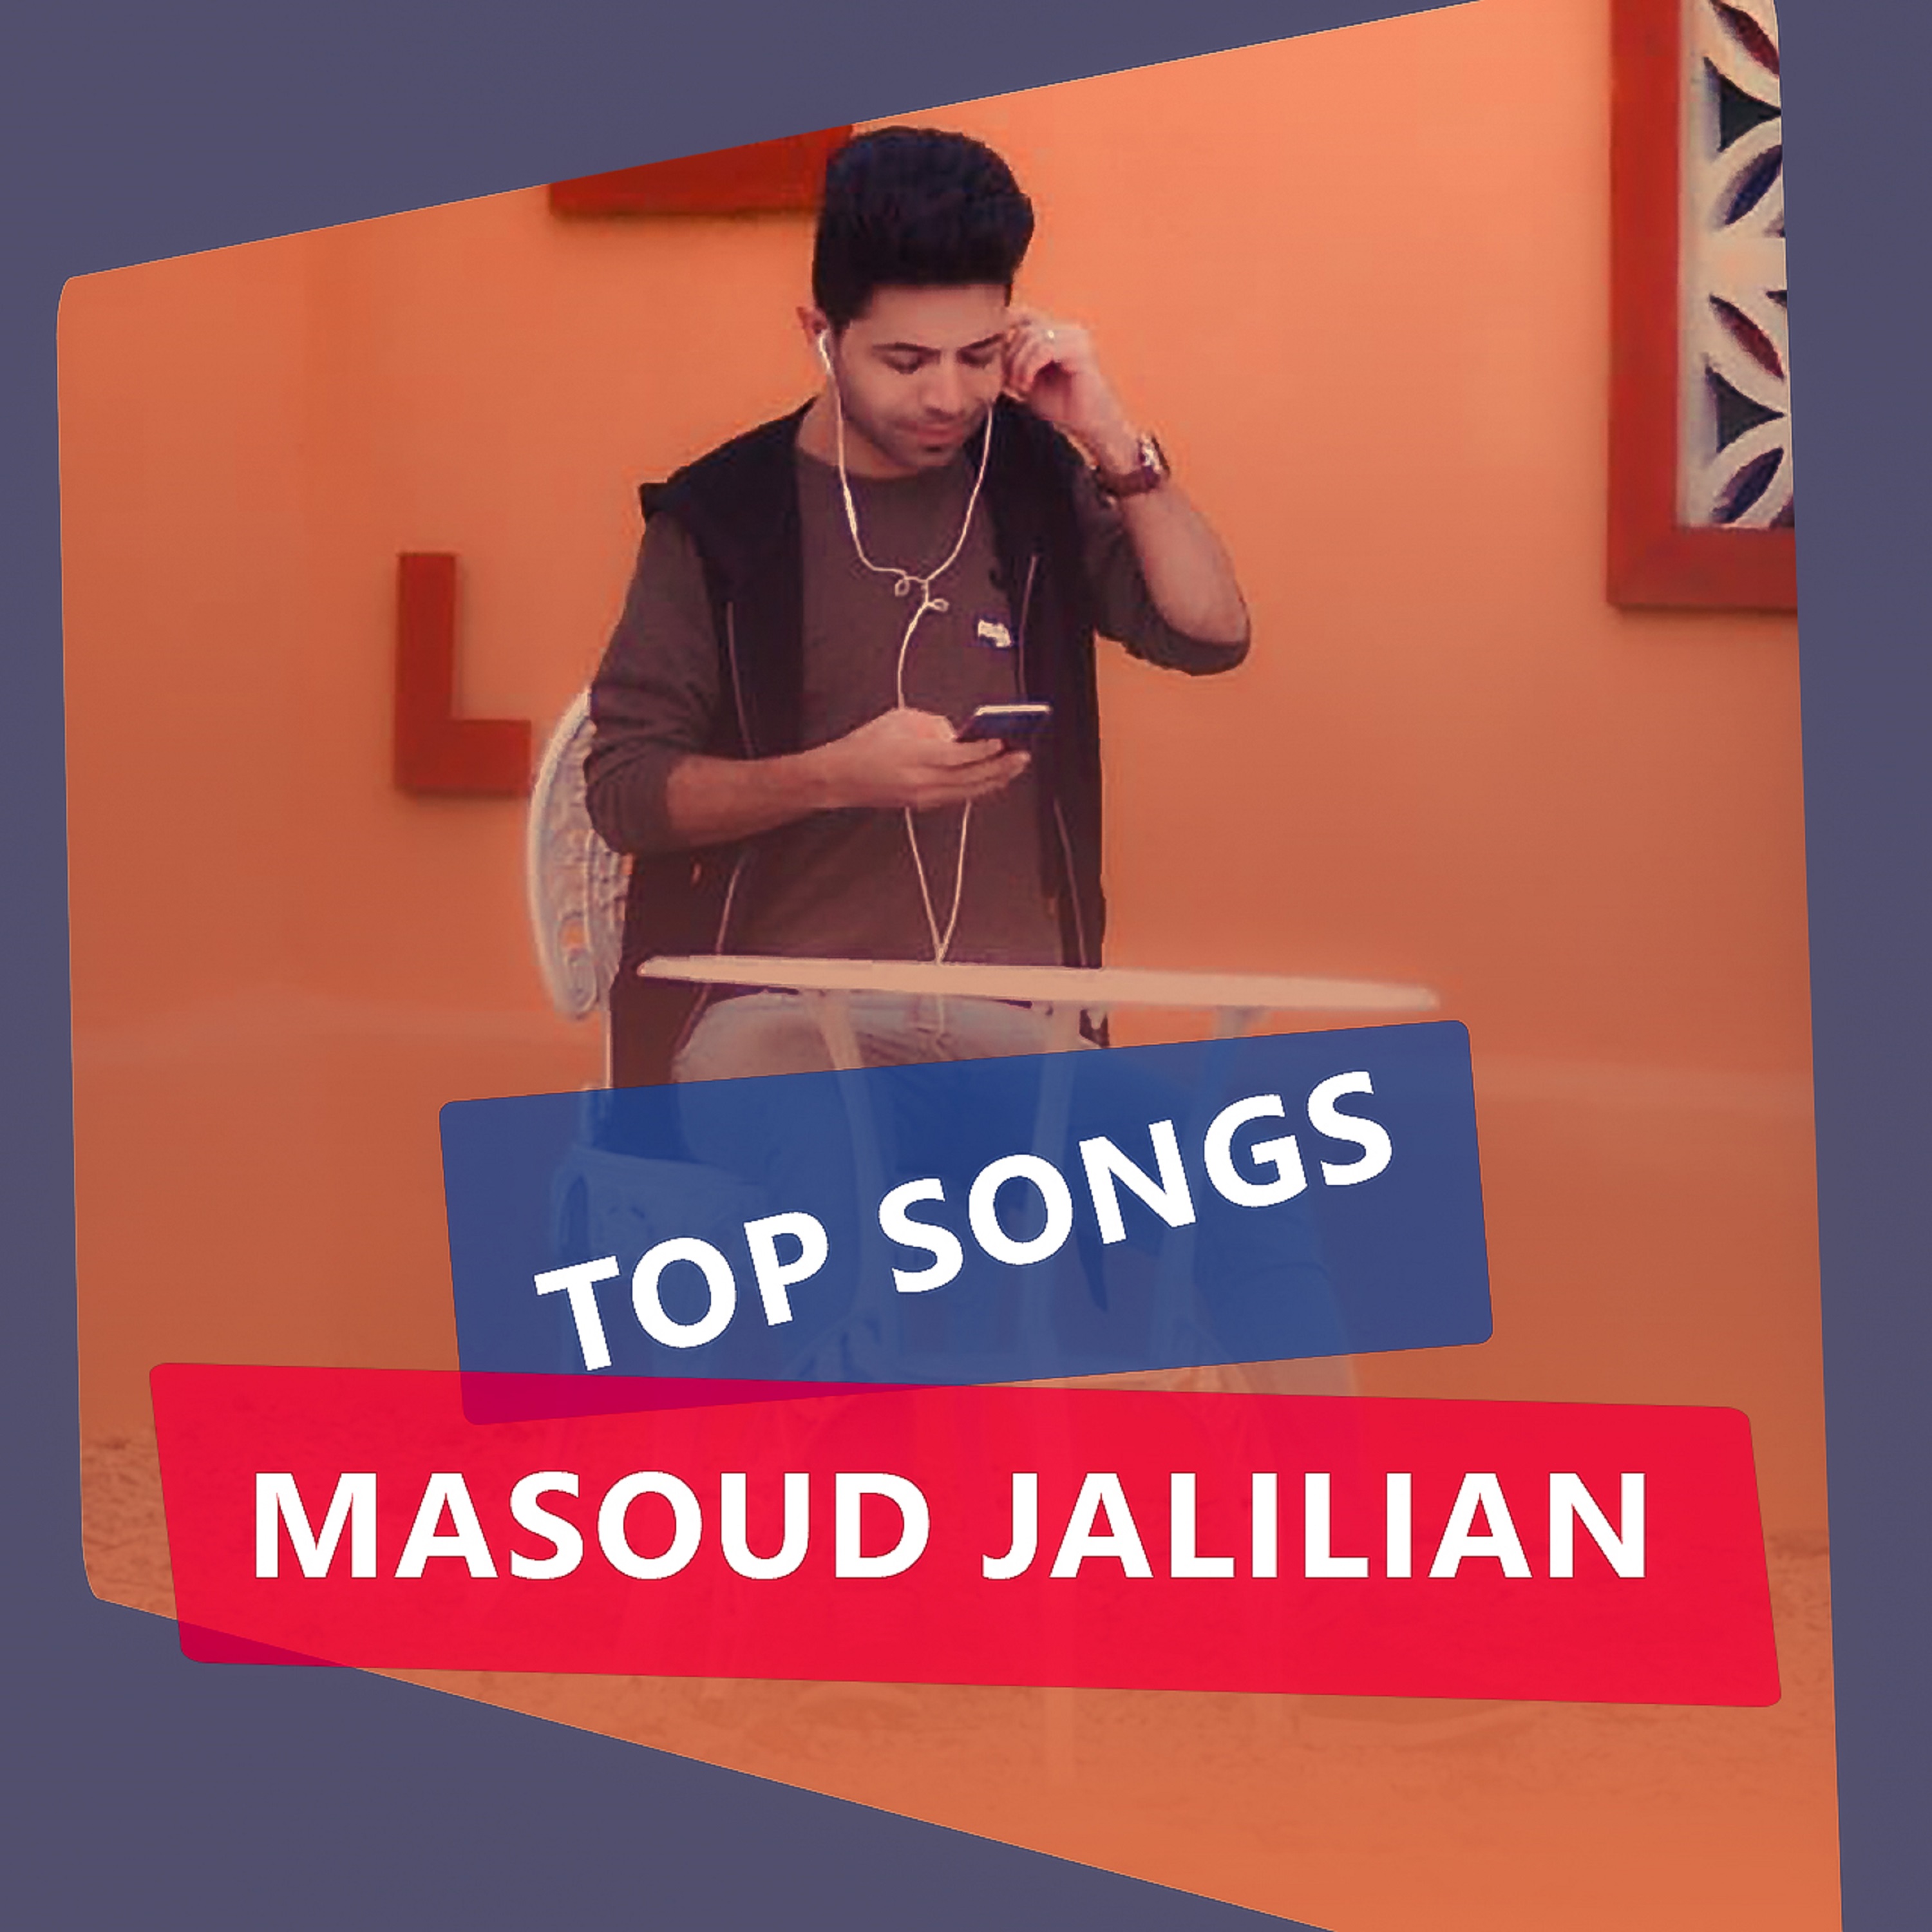  دانلود آهنگ جدید مسعود جلیلیان - عروسی | Download New Music By Masoud Jalilian - Aroosi